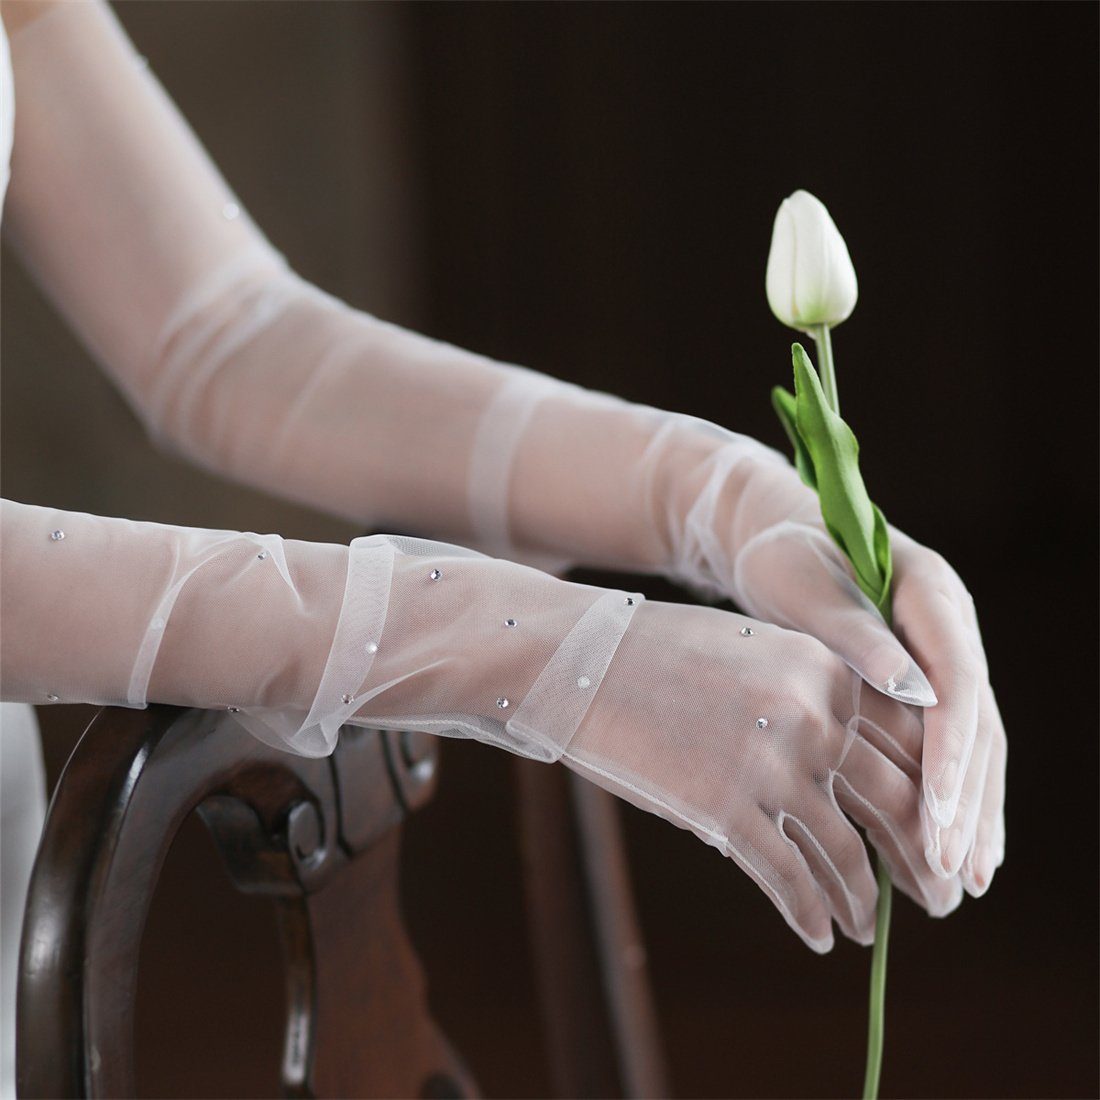 Hochzeitsessen, Handschuhe DÖRÖY Glitzerhandschuhe weiße Abendhandschuhe lange für das